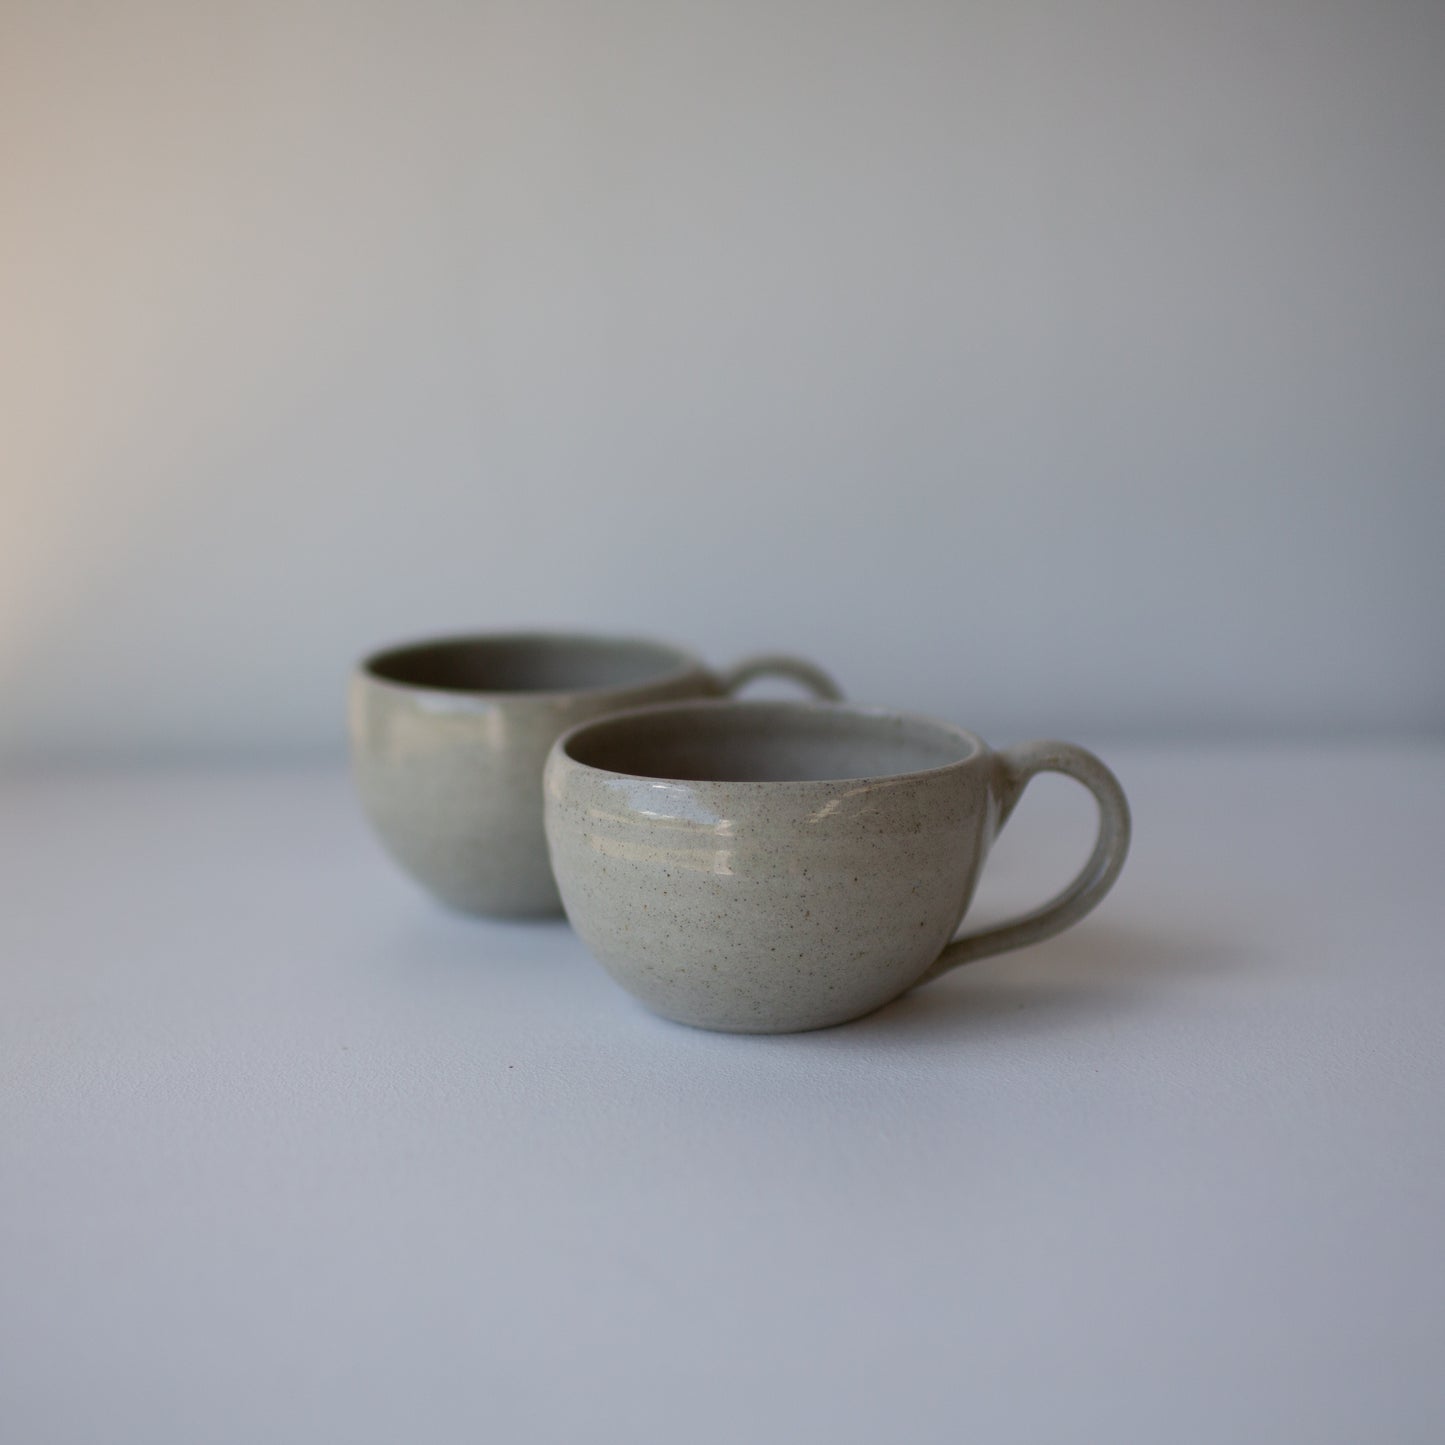 Teacups - Sandstone